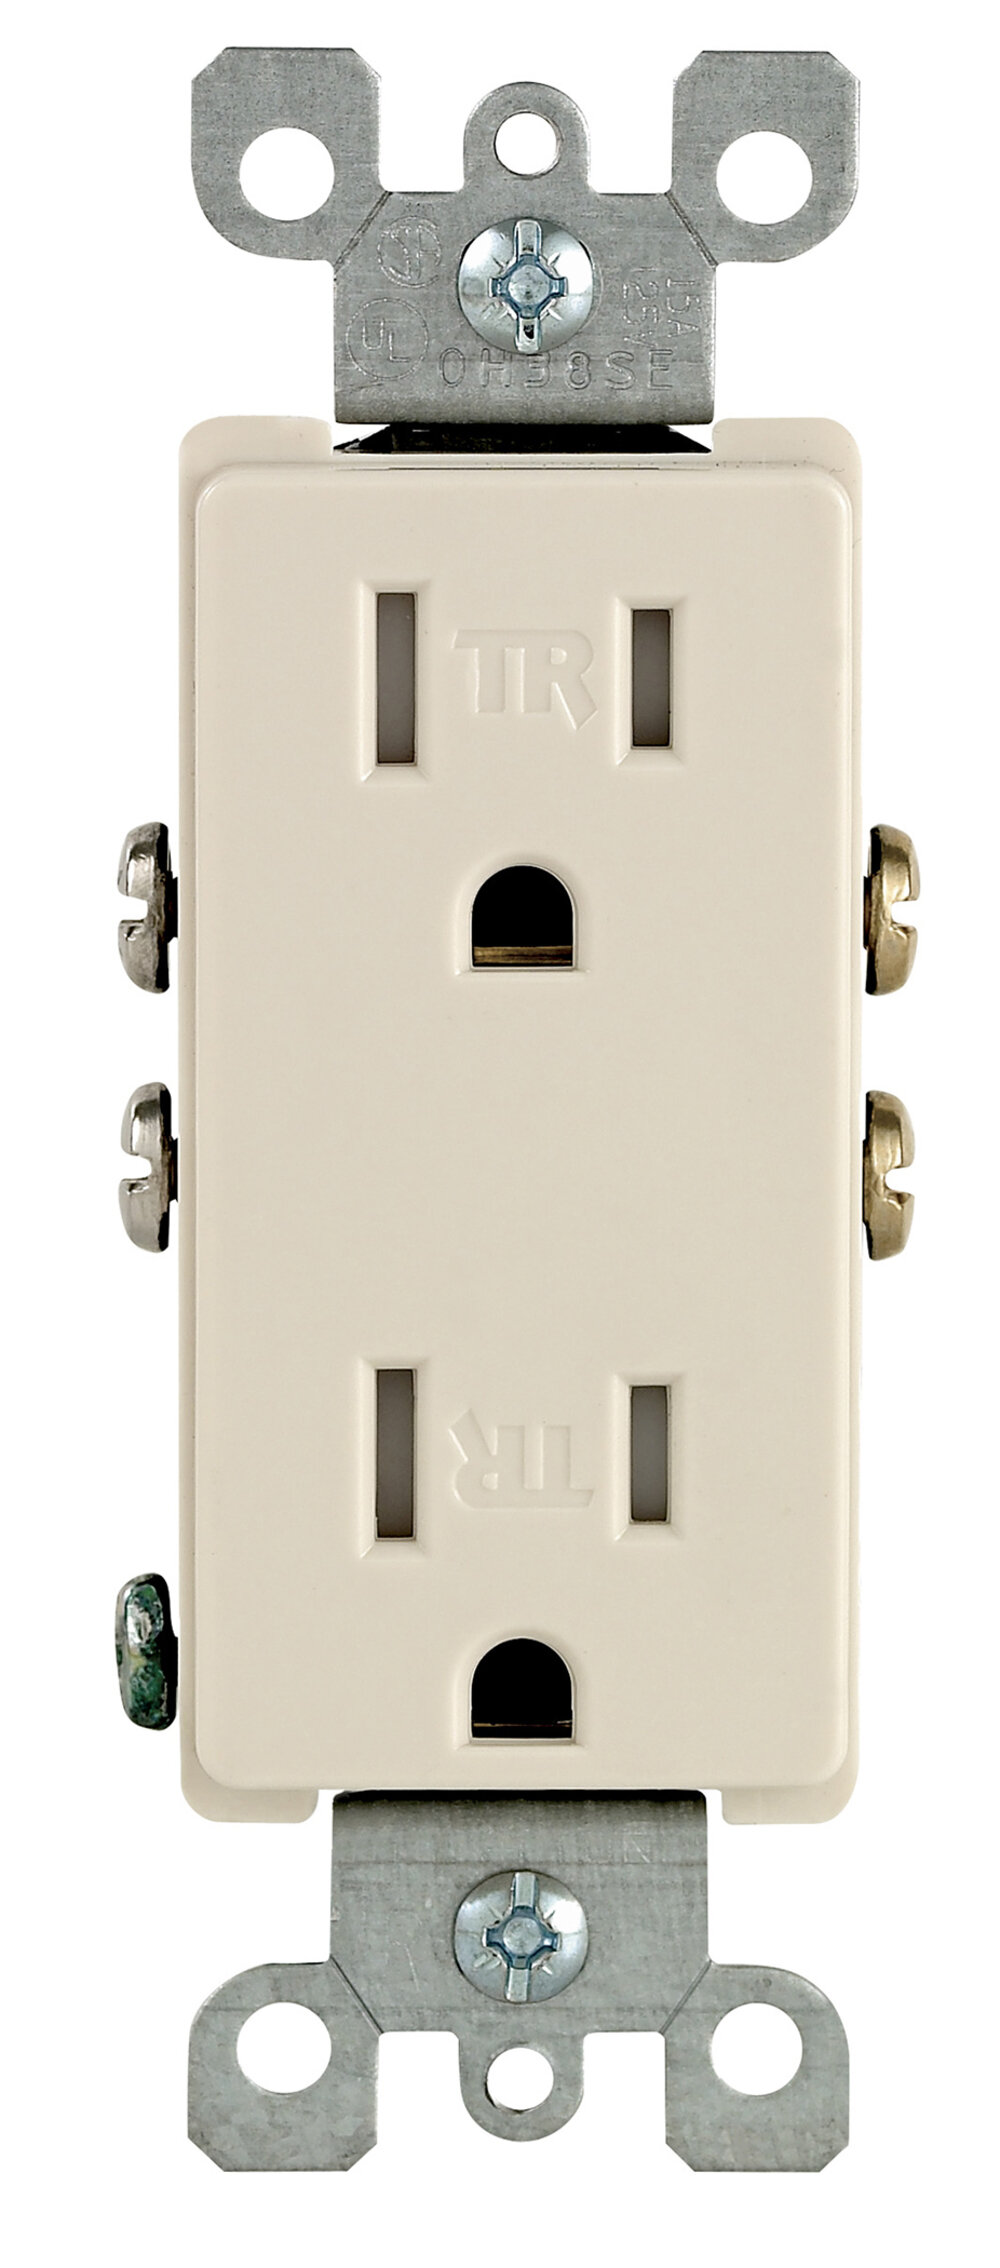 15 Amps Tamper Resistant Outlet